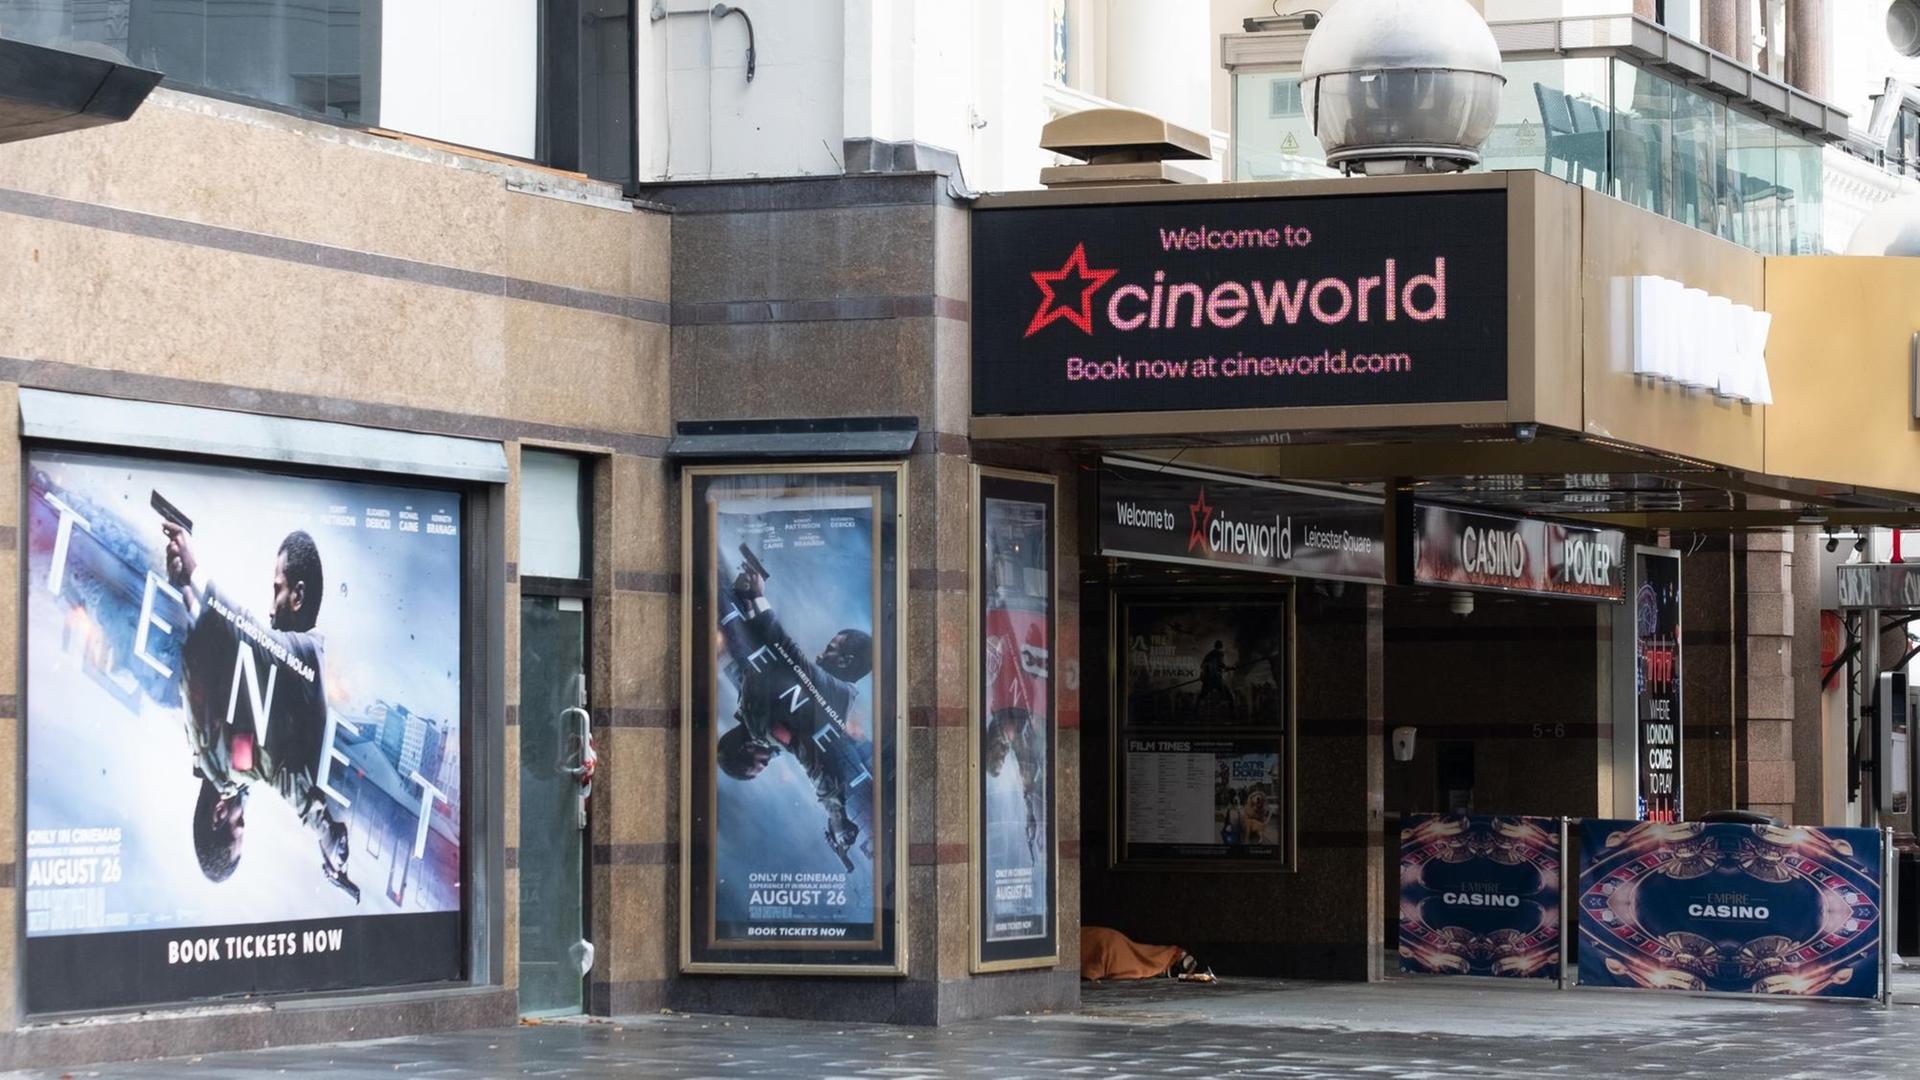 Ein Kino der Kette Cineworld in London mit Plakaten für den Film "TENET", einem Blockbuster von Warner Brothers